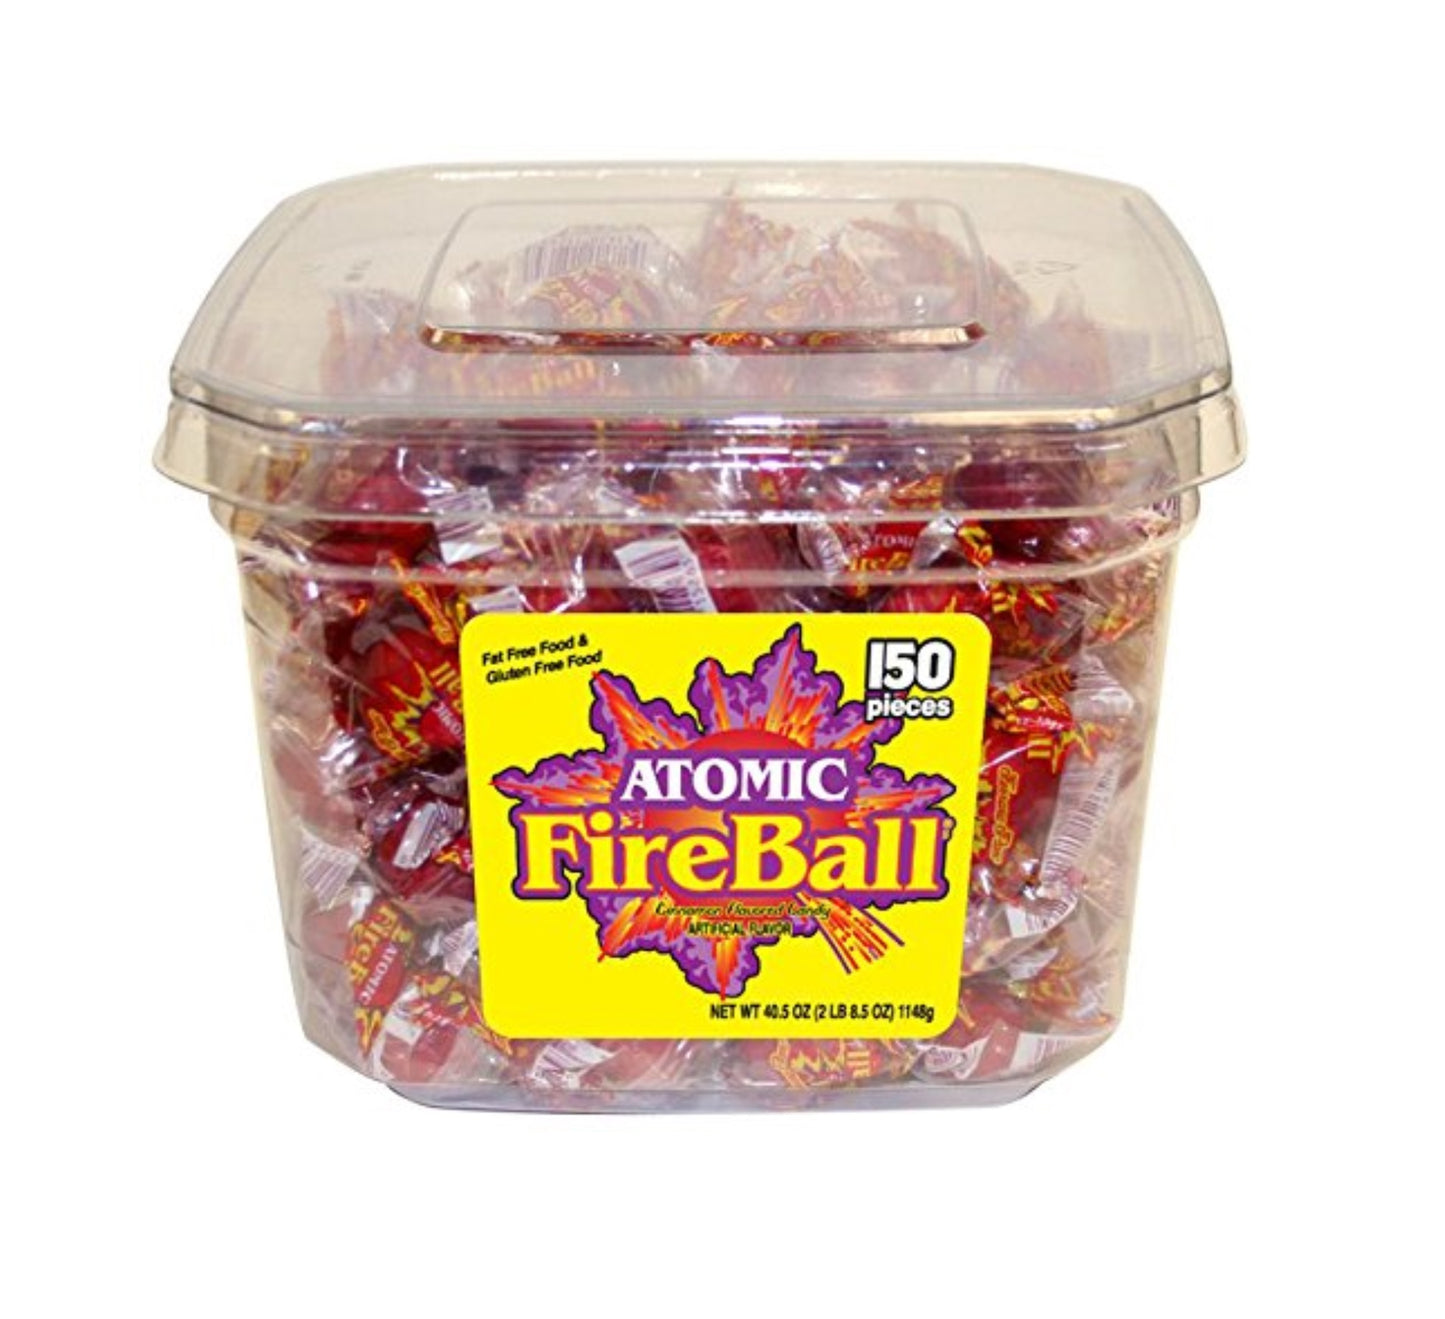 Atomic Fireball Tub - 150 Pieces